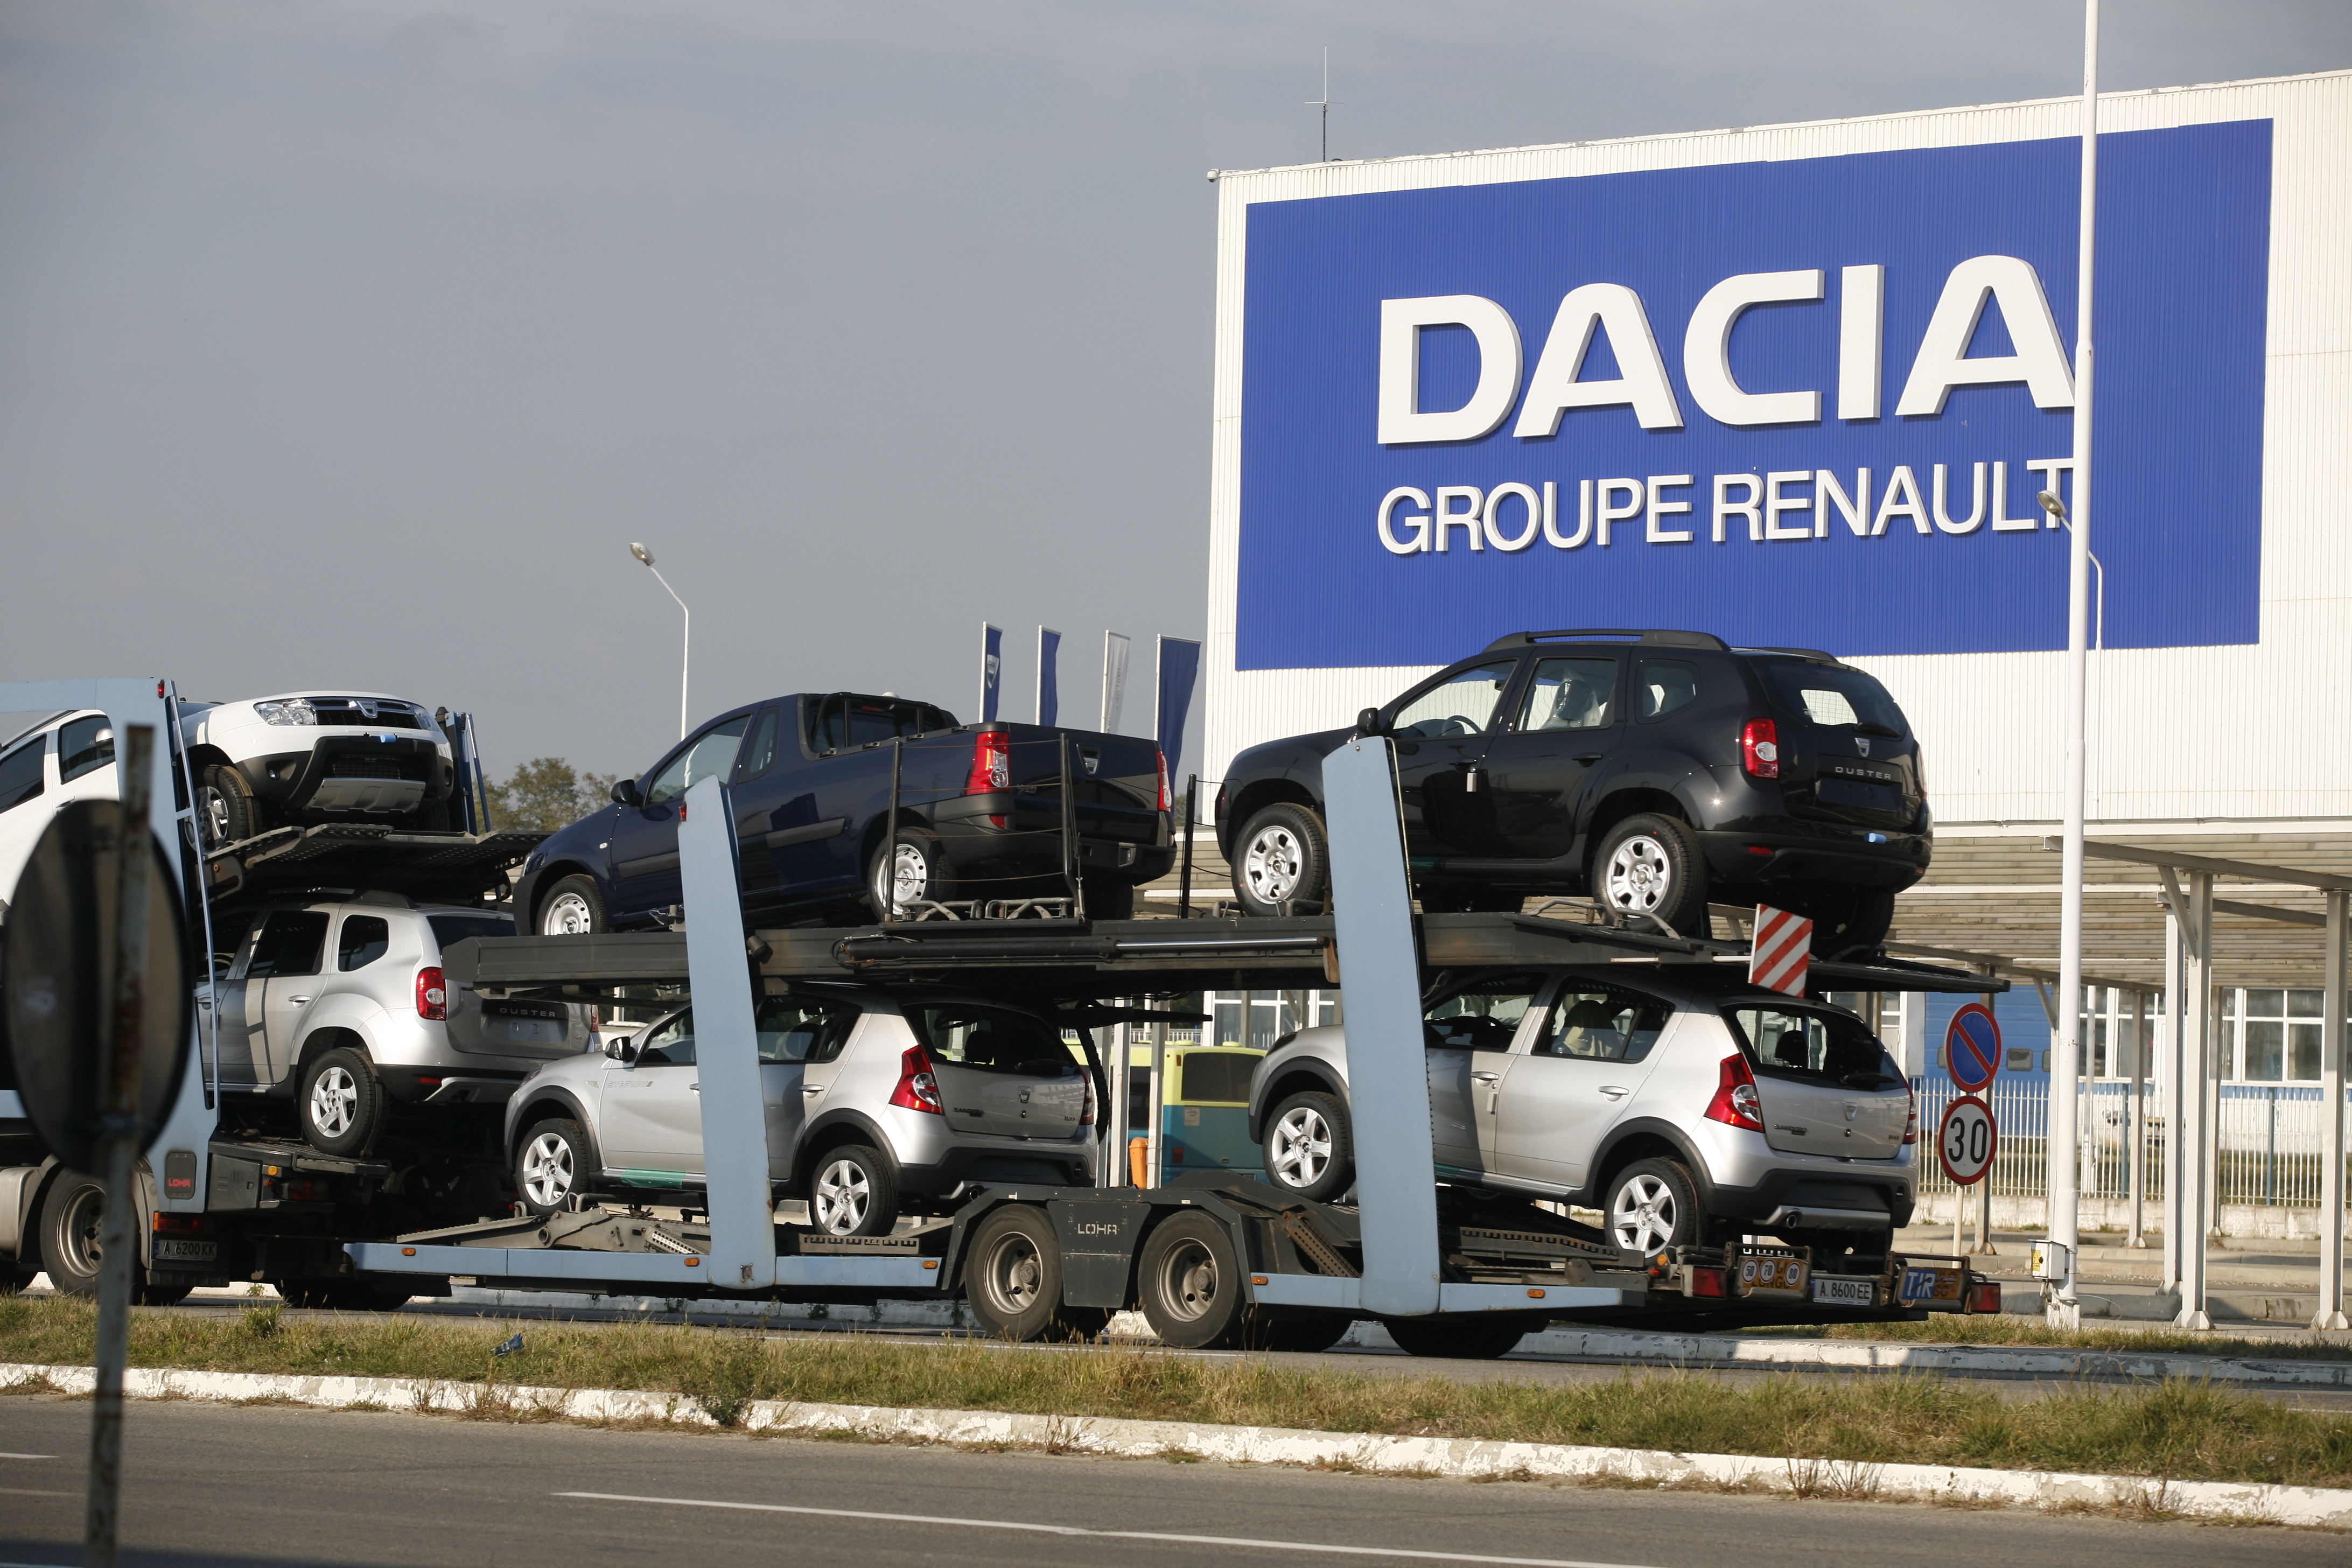 ProMotor: Câte automobile Dacia s-au vândut în ultimii 10 ani